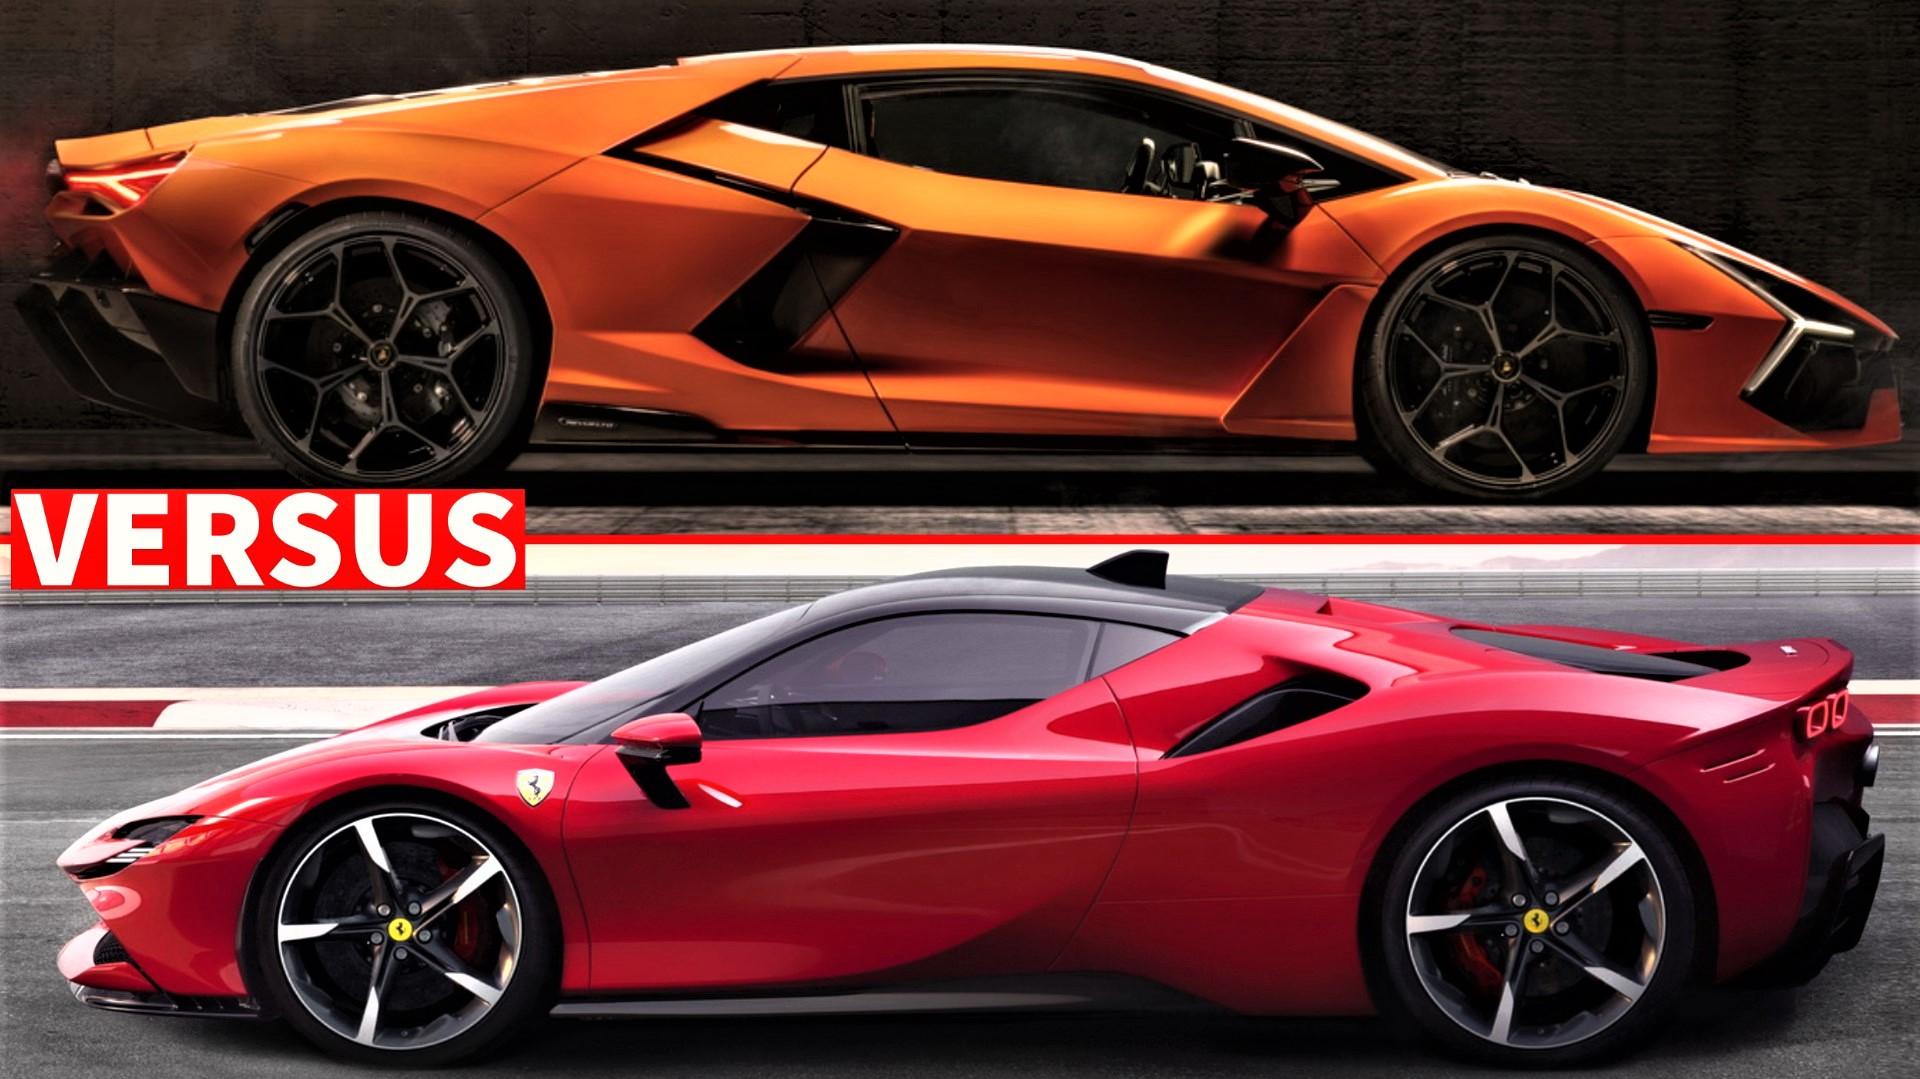  Lamborghini Revuelto vs Ferrari SF90 Stradale Comparison